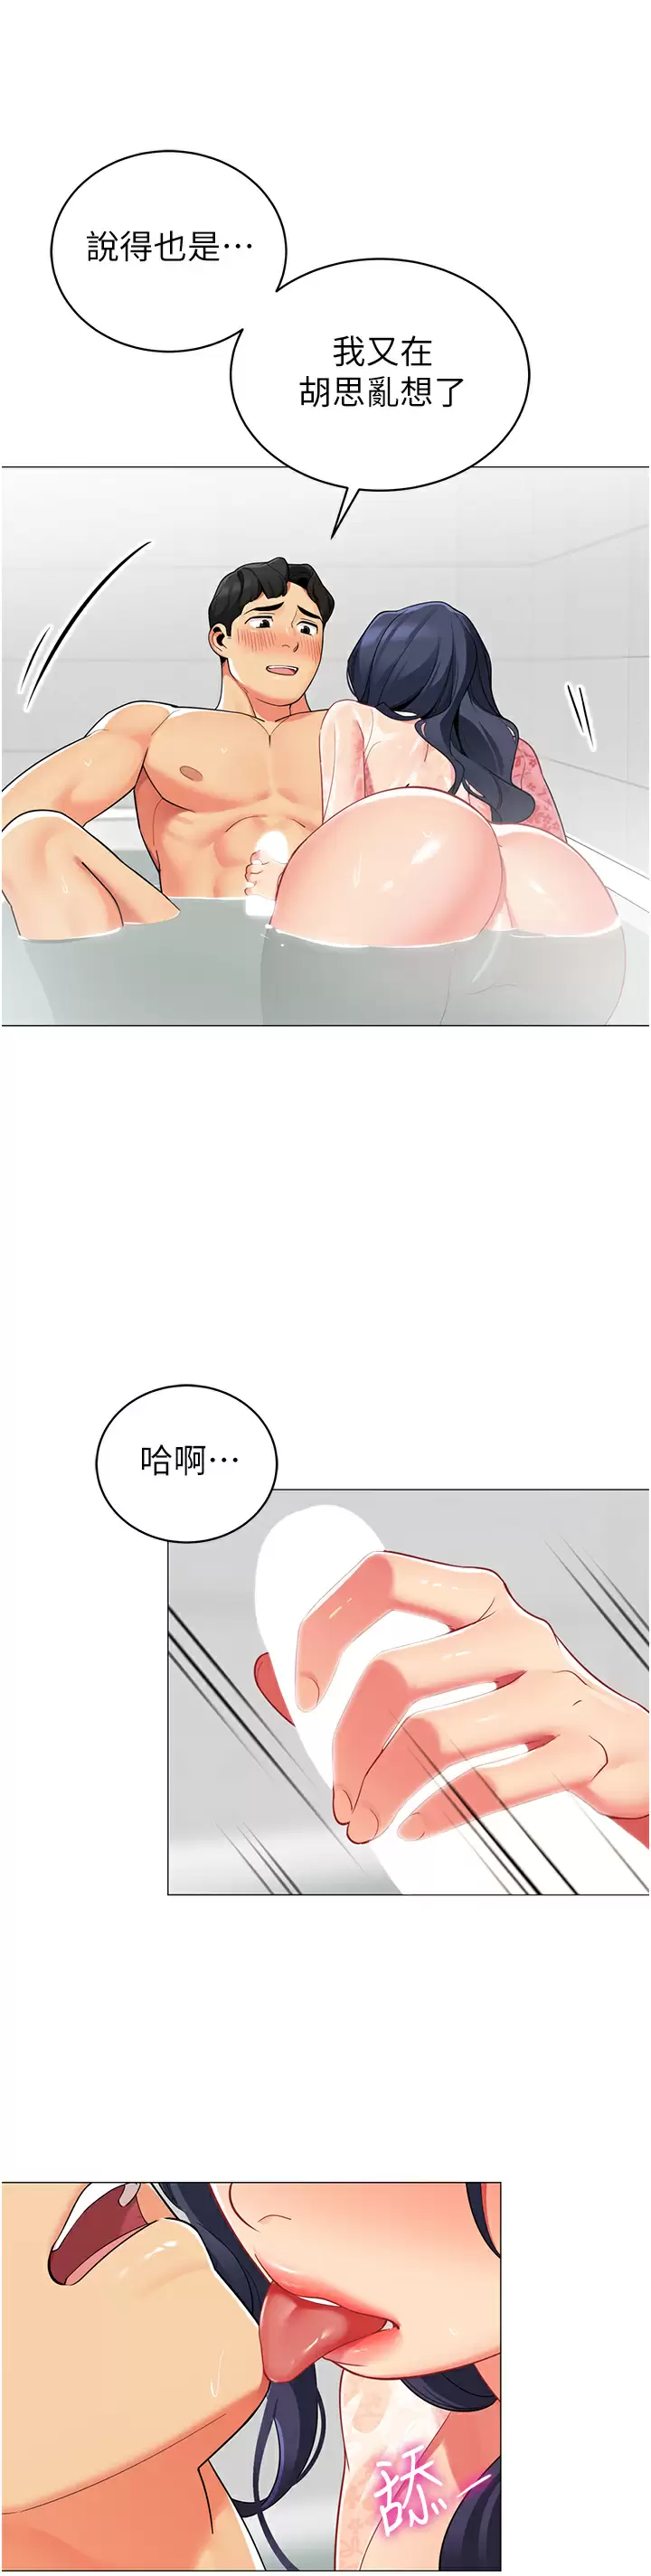 韩国污漫画 帳篷裡的秘密 第49话在浴室里深情缠绵 32